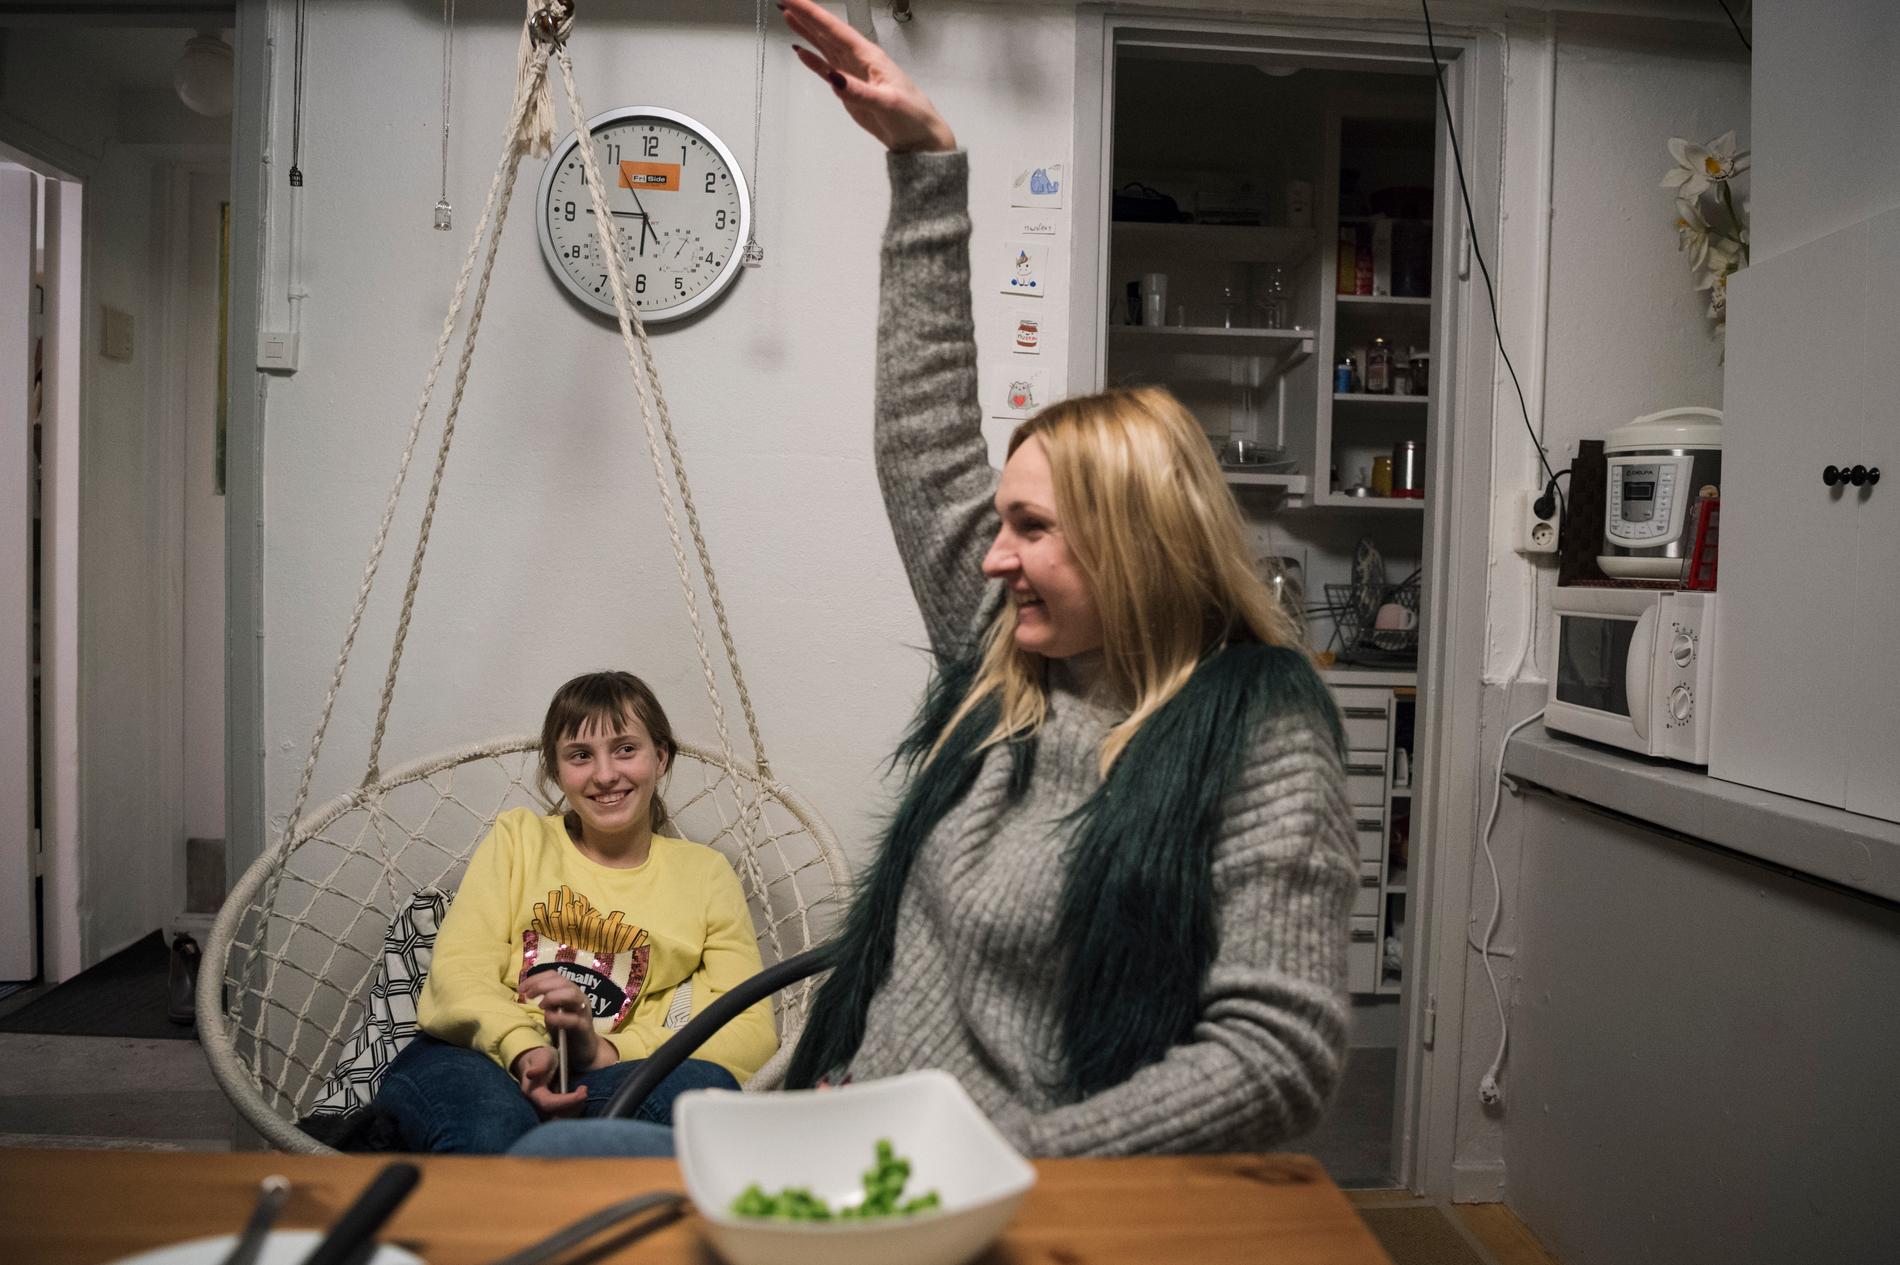 Iryna och dottern i lokalen de bor i. Fotografen Anna Tärnhuvud lyckades hitta Iryna efter attacken i april förra året. De träffades strax efter nyår på ett första möte.